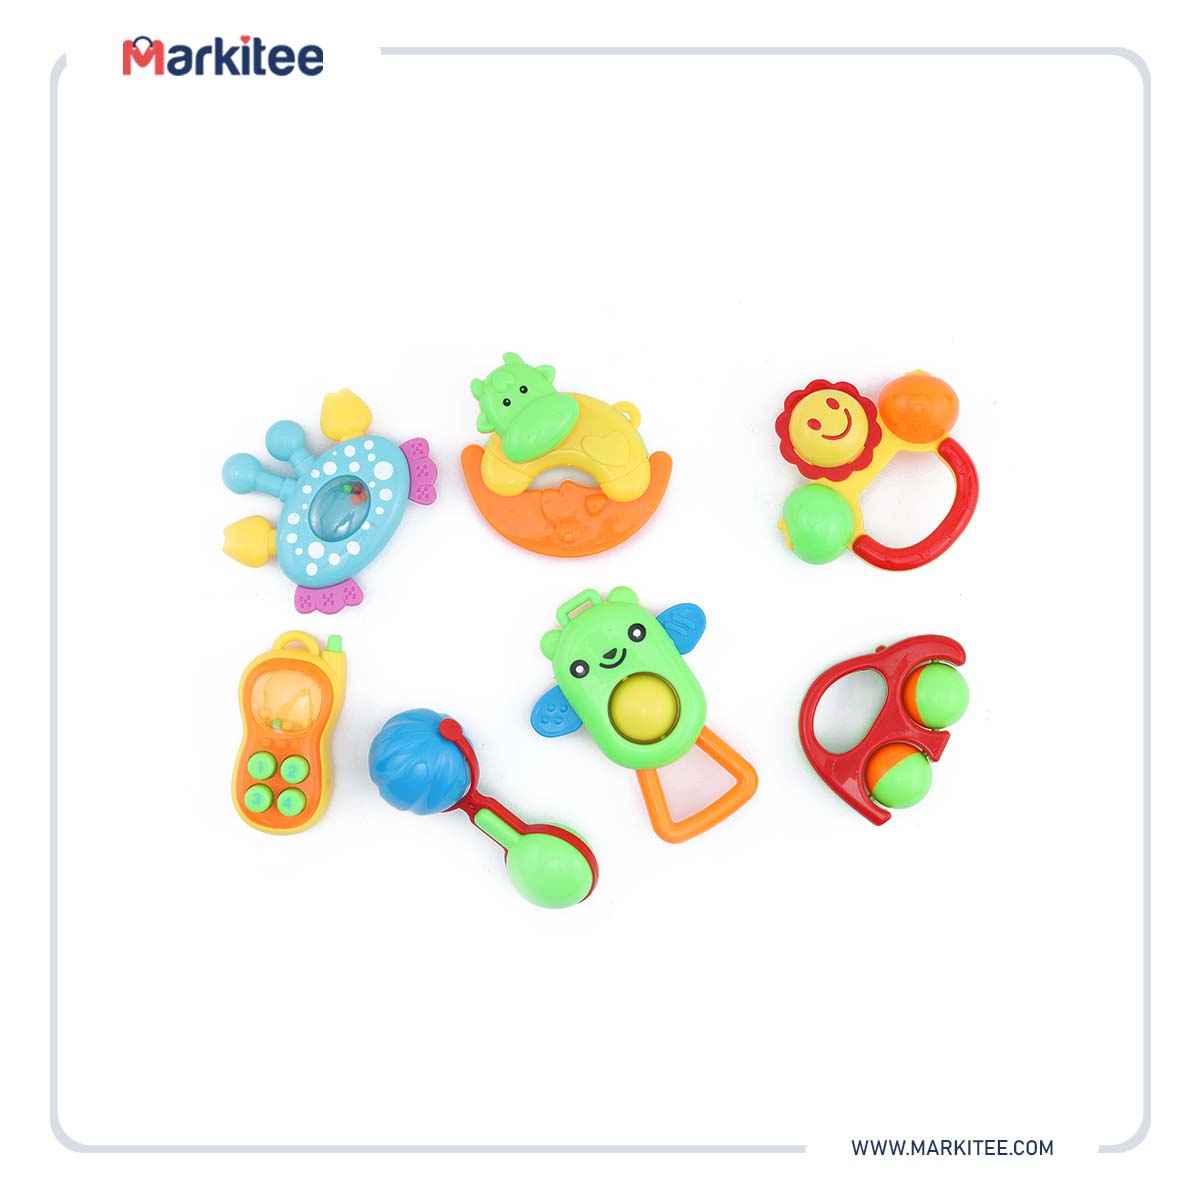 ماركيتي-markitee-20220511225729015_Markitee-Toys-3370A(3).JPG